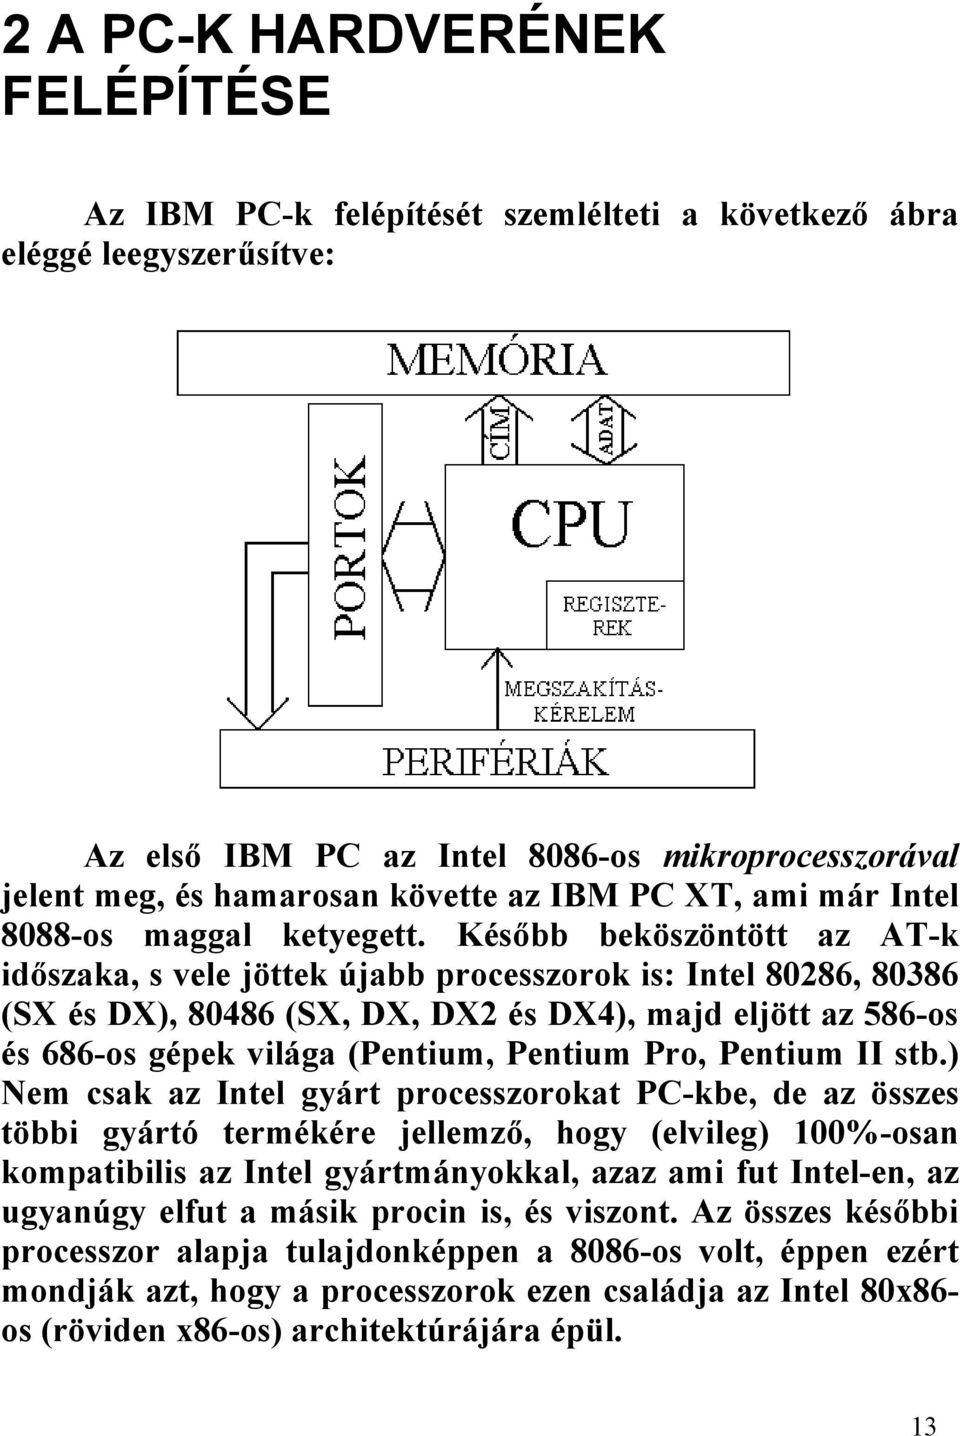 Később beköszöntött az AT-k időszaka, s vele jöttek újabb processzorok is: Intel 80286, 80386 (SX és DX), 80486 (SX, DX, DX2 és DX4), majd eljött az 586-os és 686-os gépek világa (Pentium, Pentium